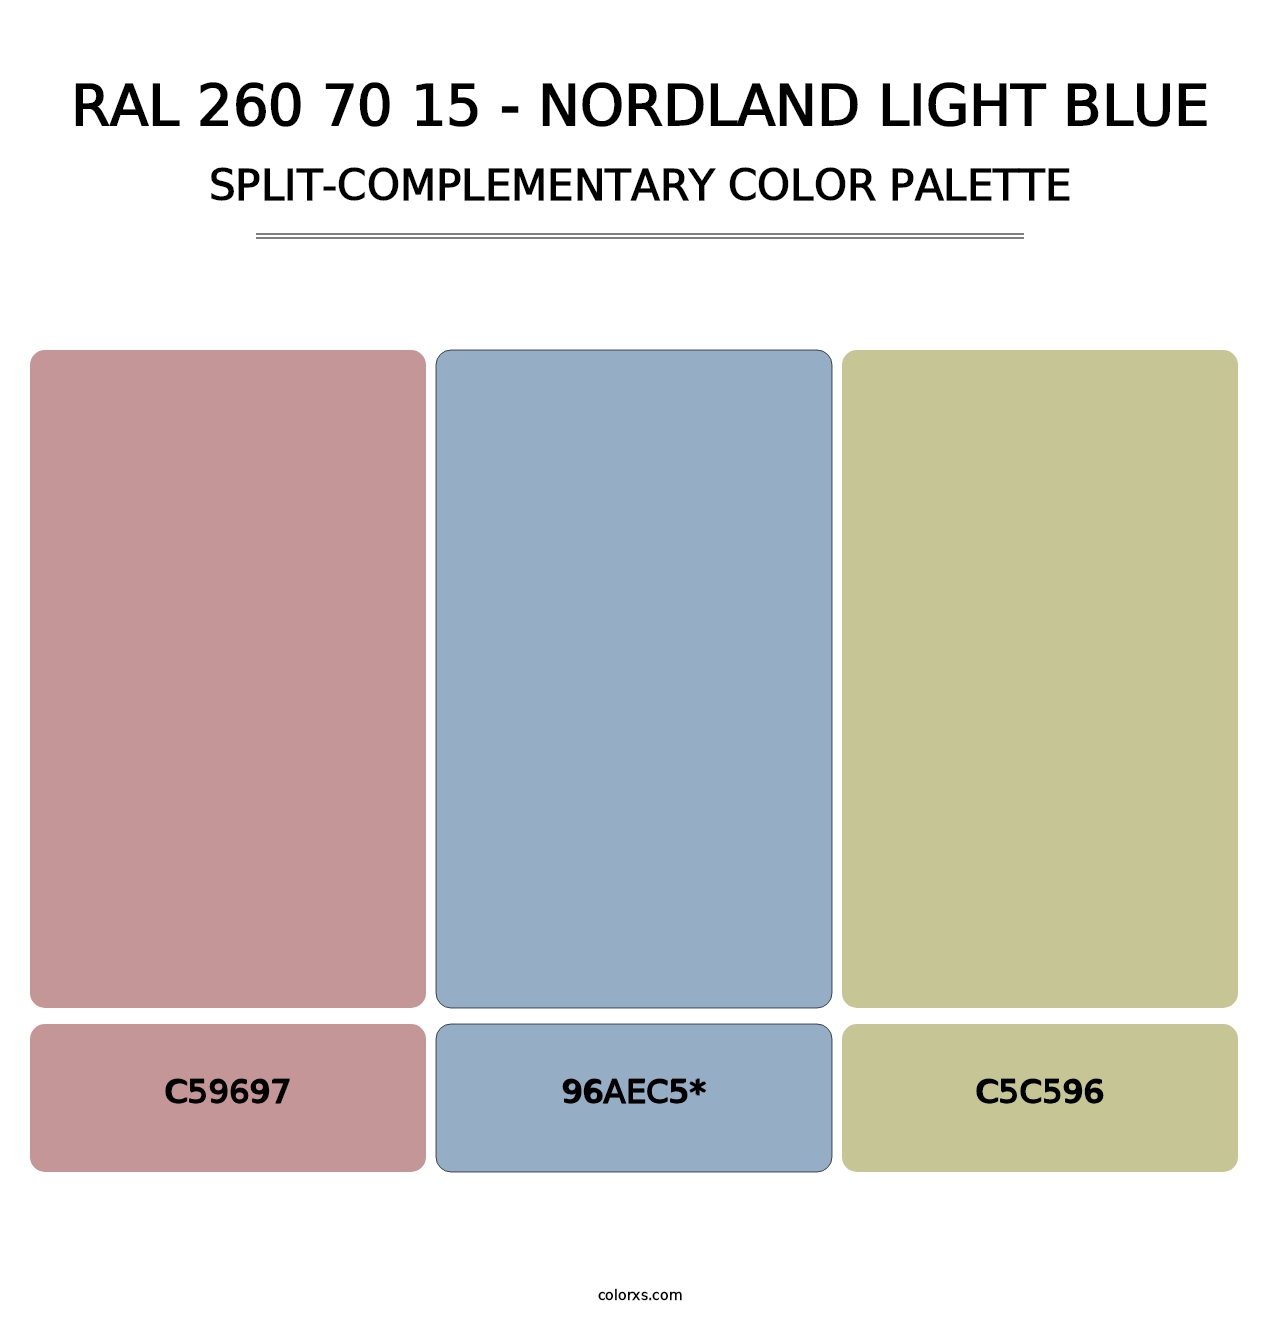 RAL 260 70 15 - Nordland Light Blue - Split-Complementary Color Palette